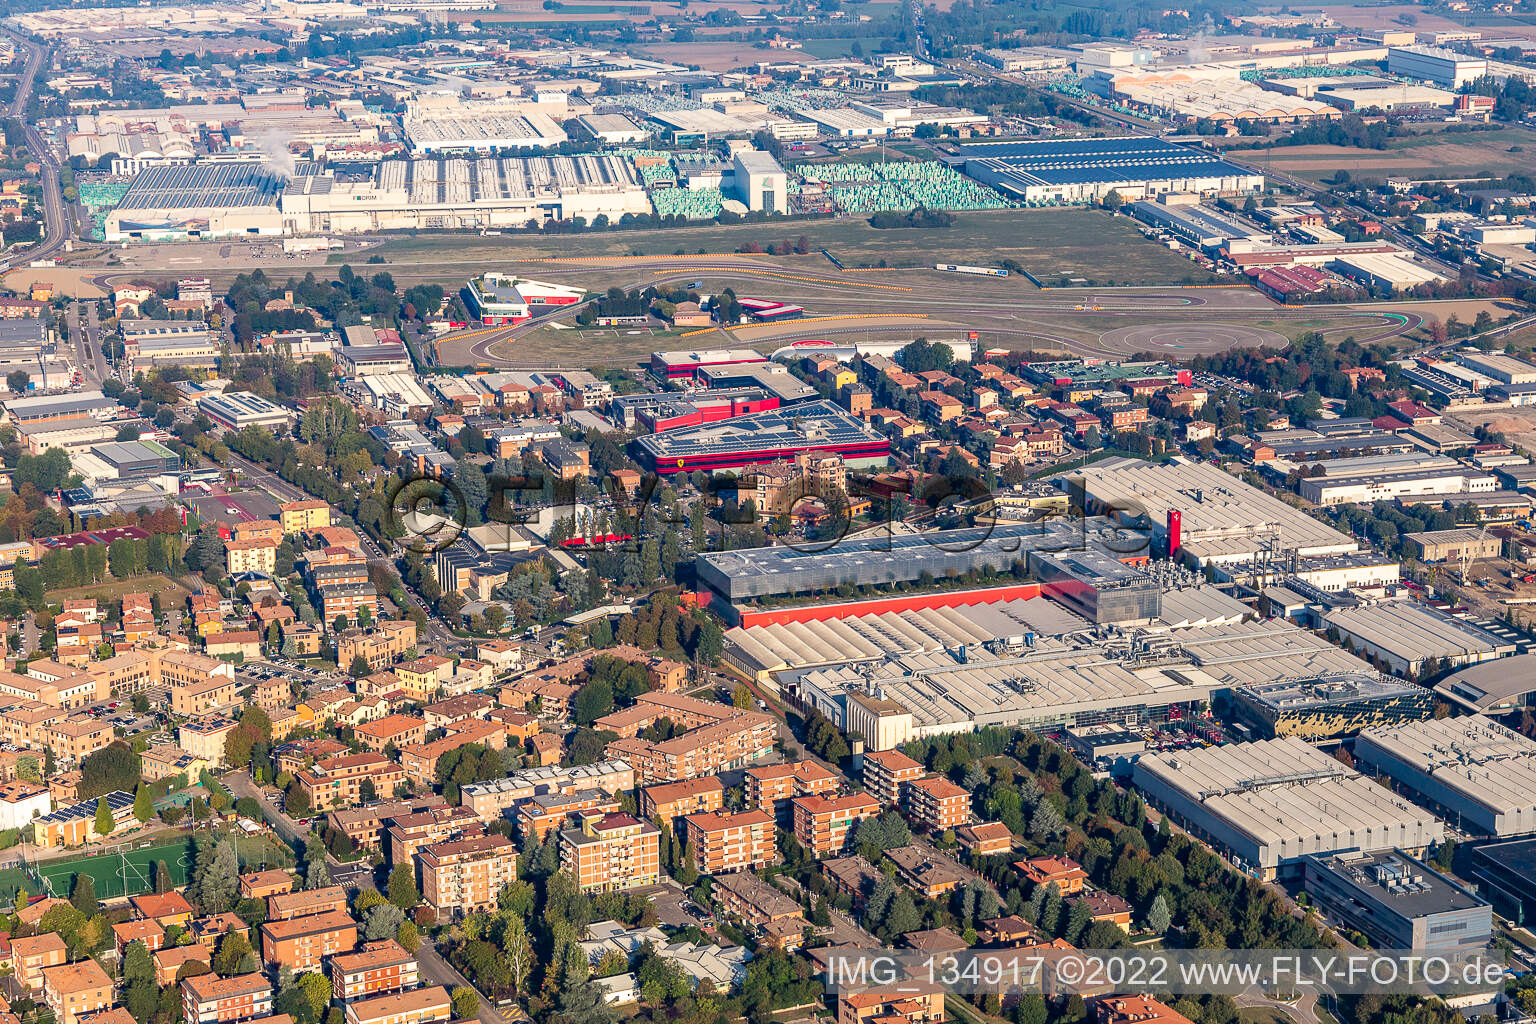 Aerial view of Ferrari SPA in Maranello in the state Modena, Italy